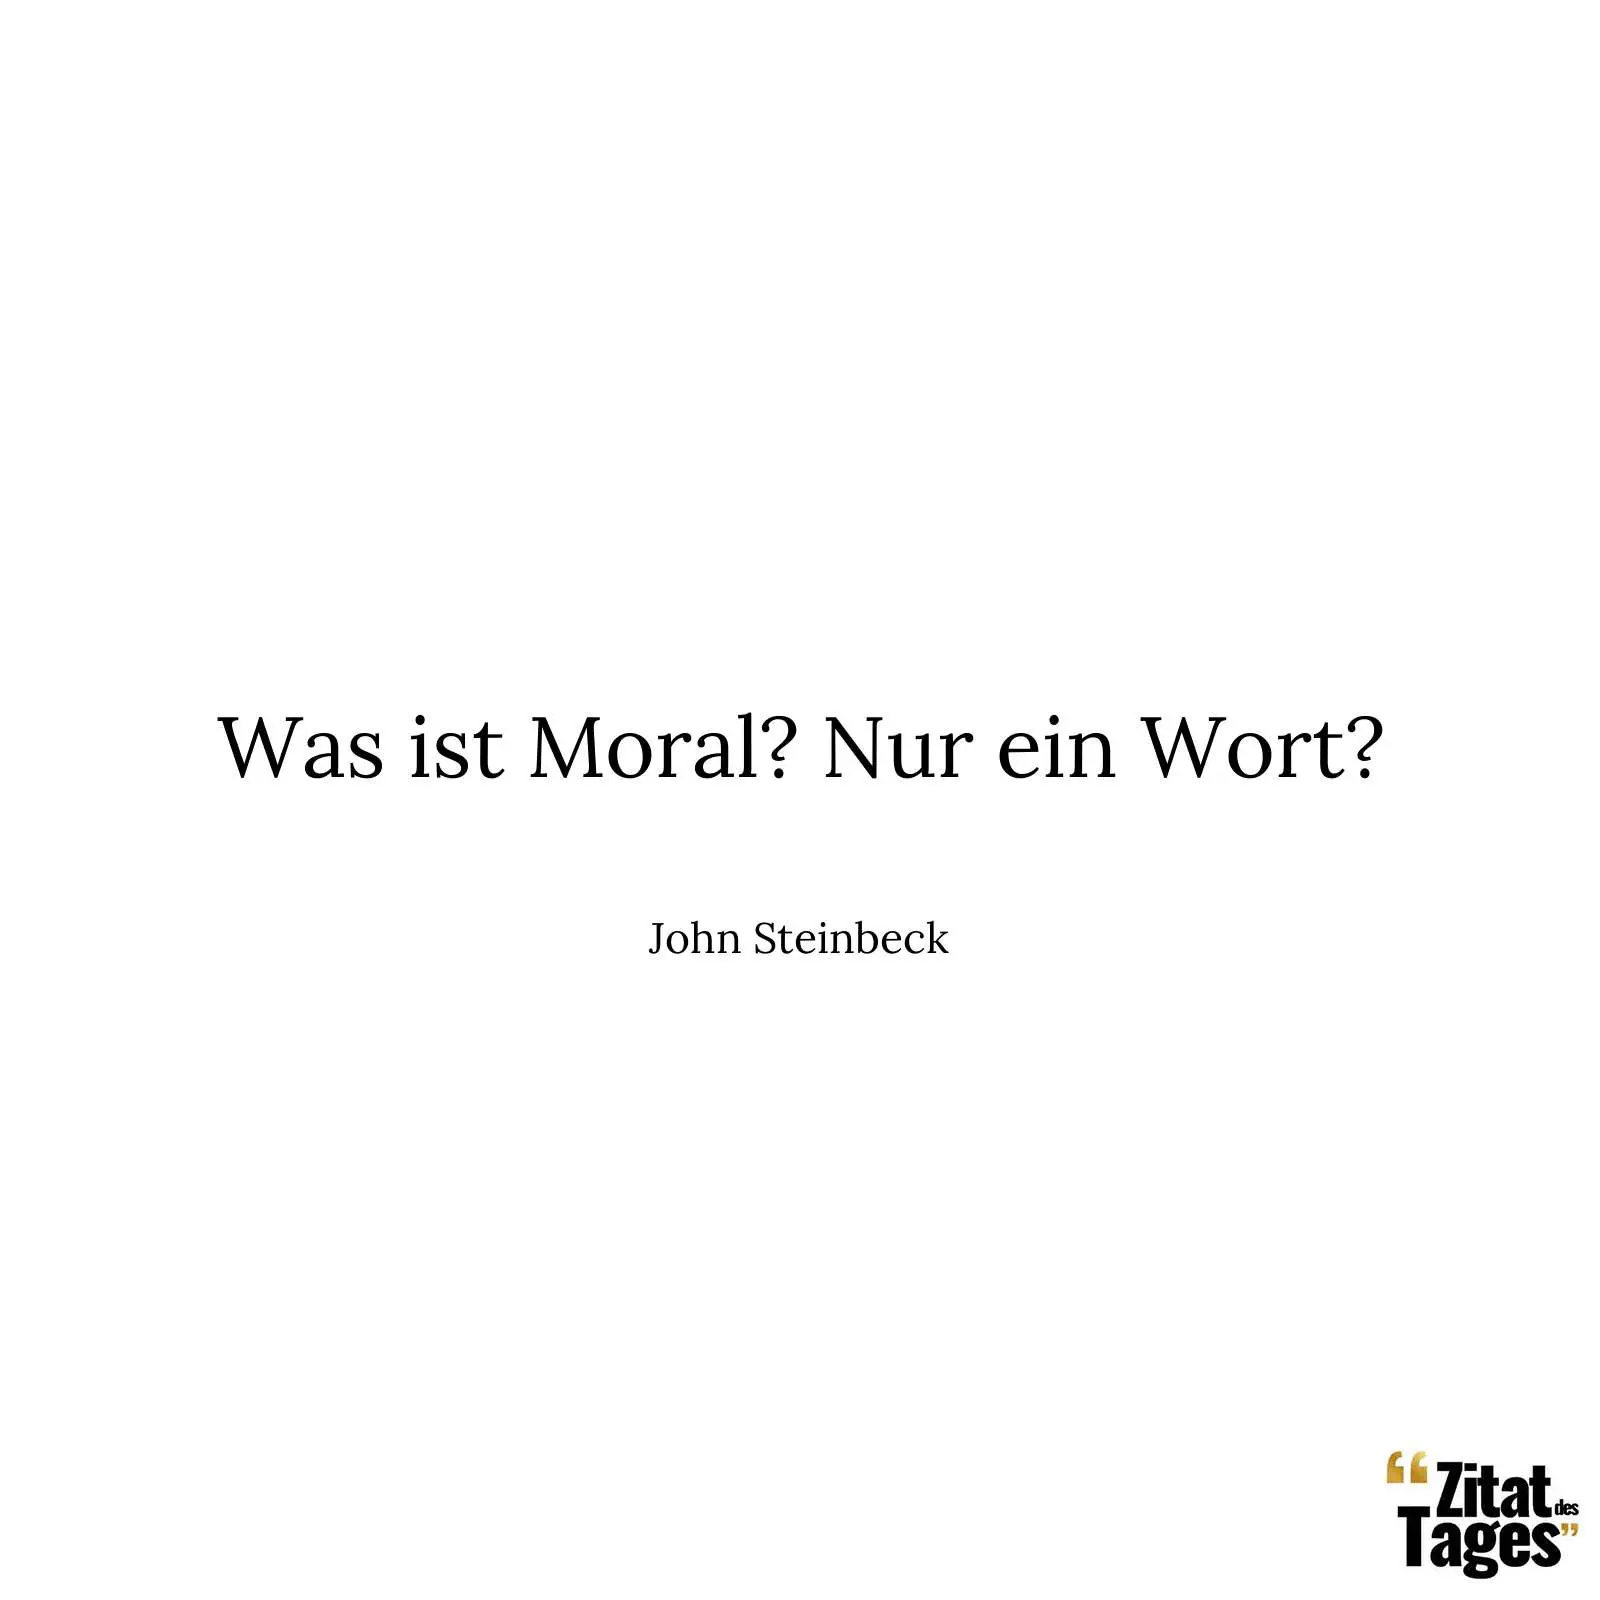 Was ist Moral? Nur ein Wort? - John Steinbeck